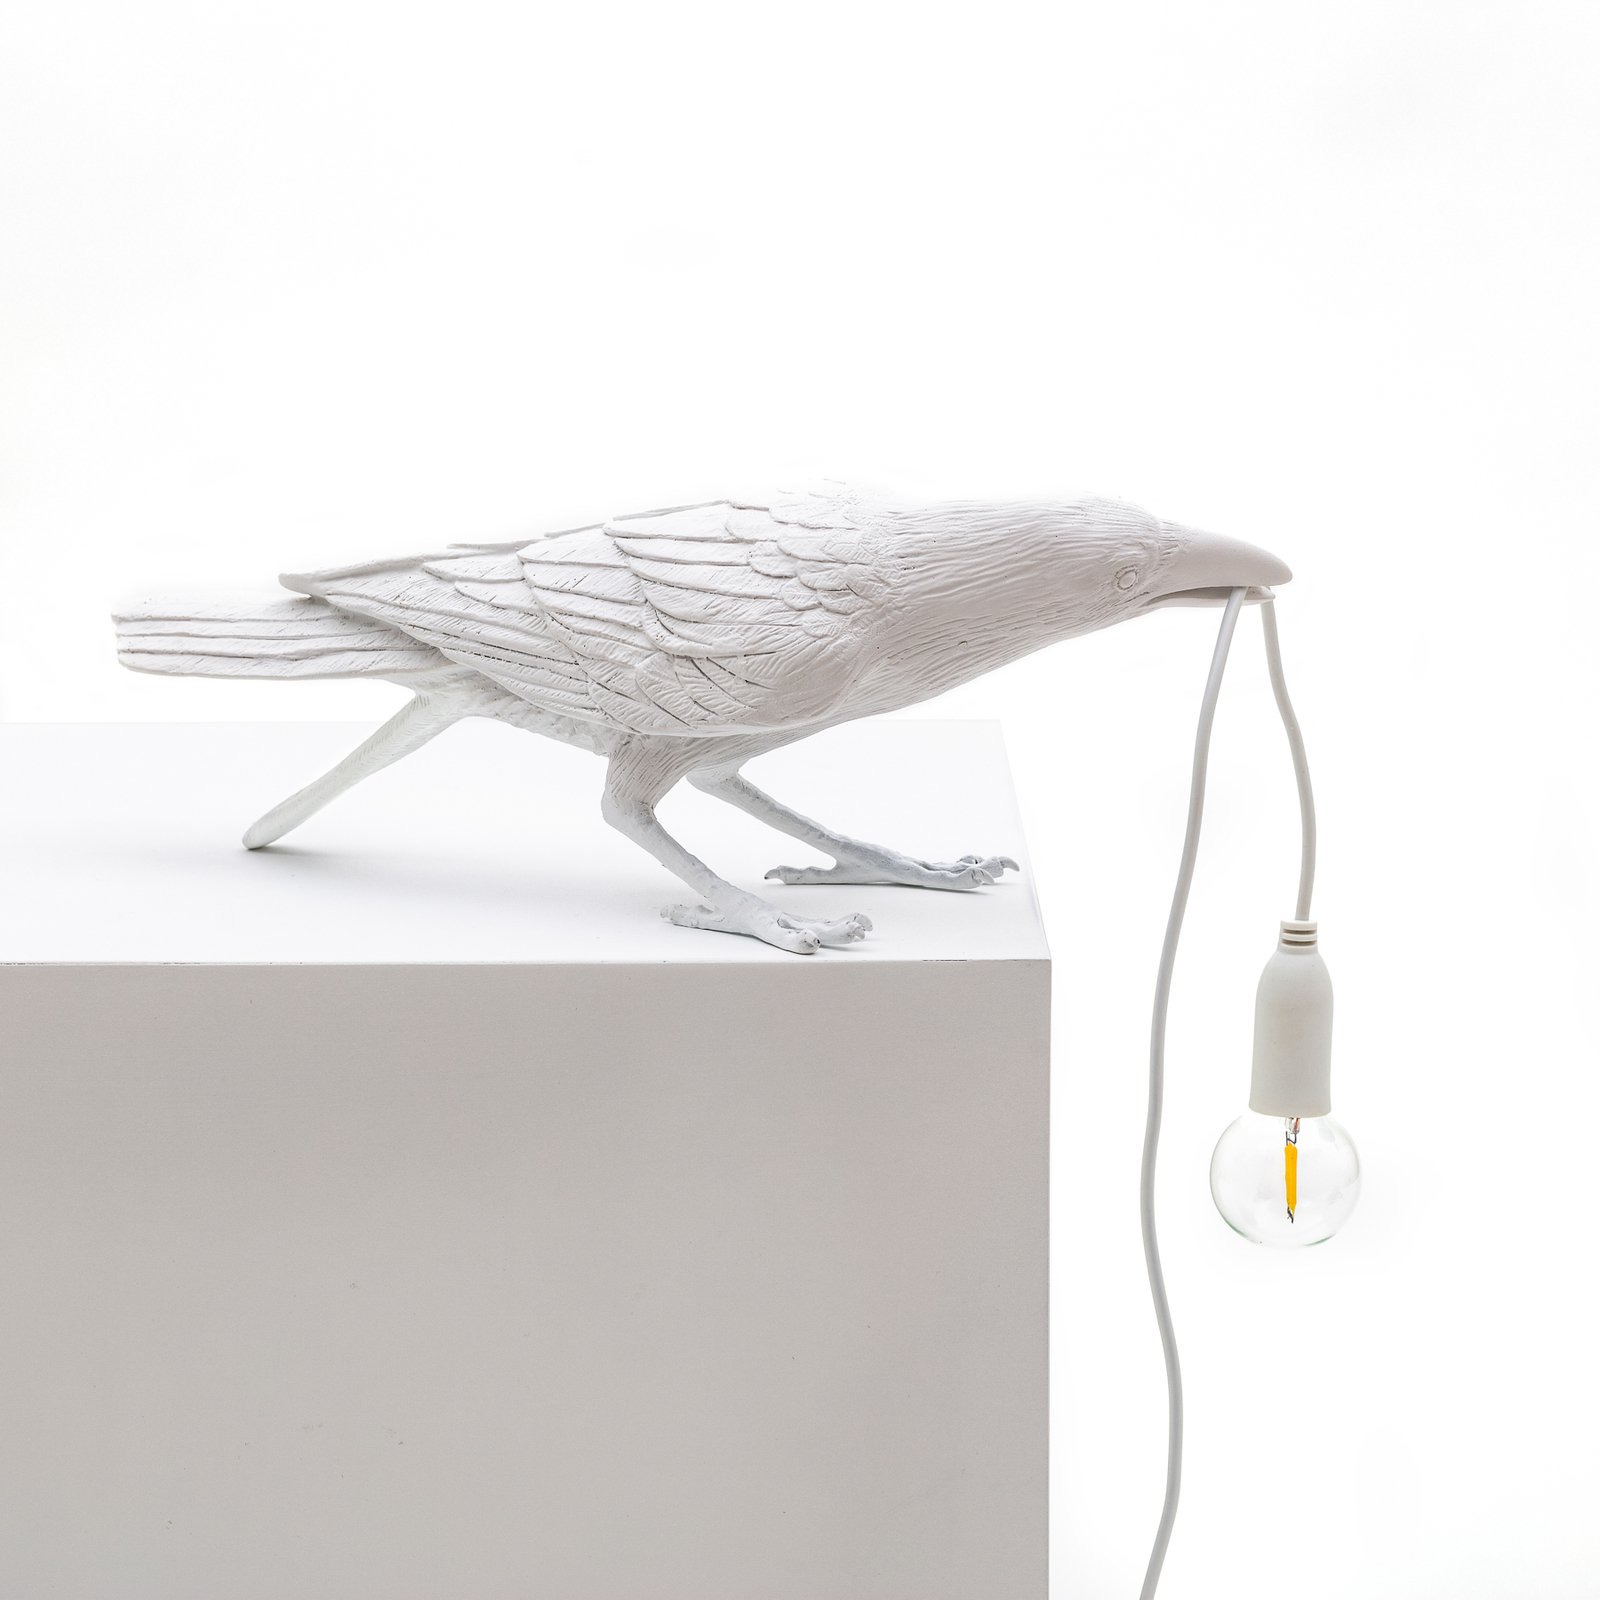 Lampada LED da terrazza Bird Lamp, giocosa bianco